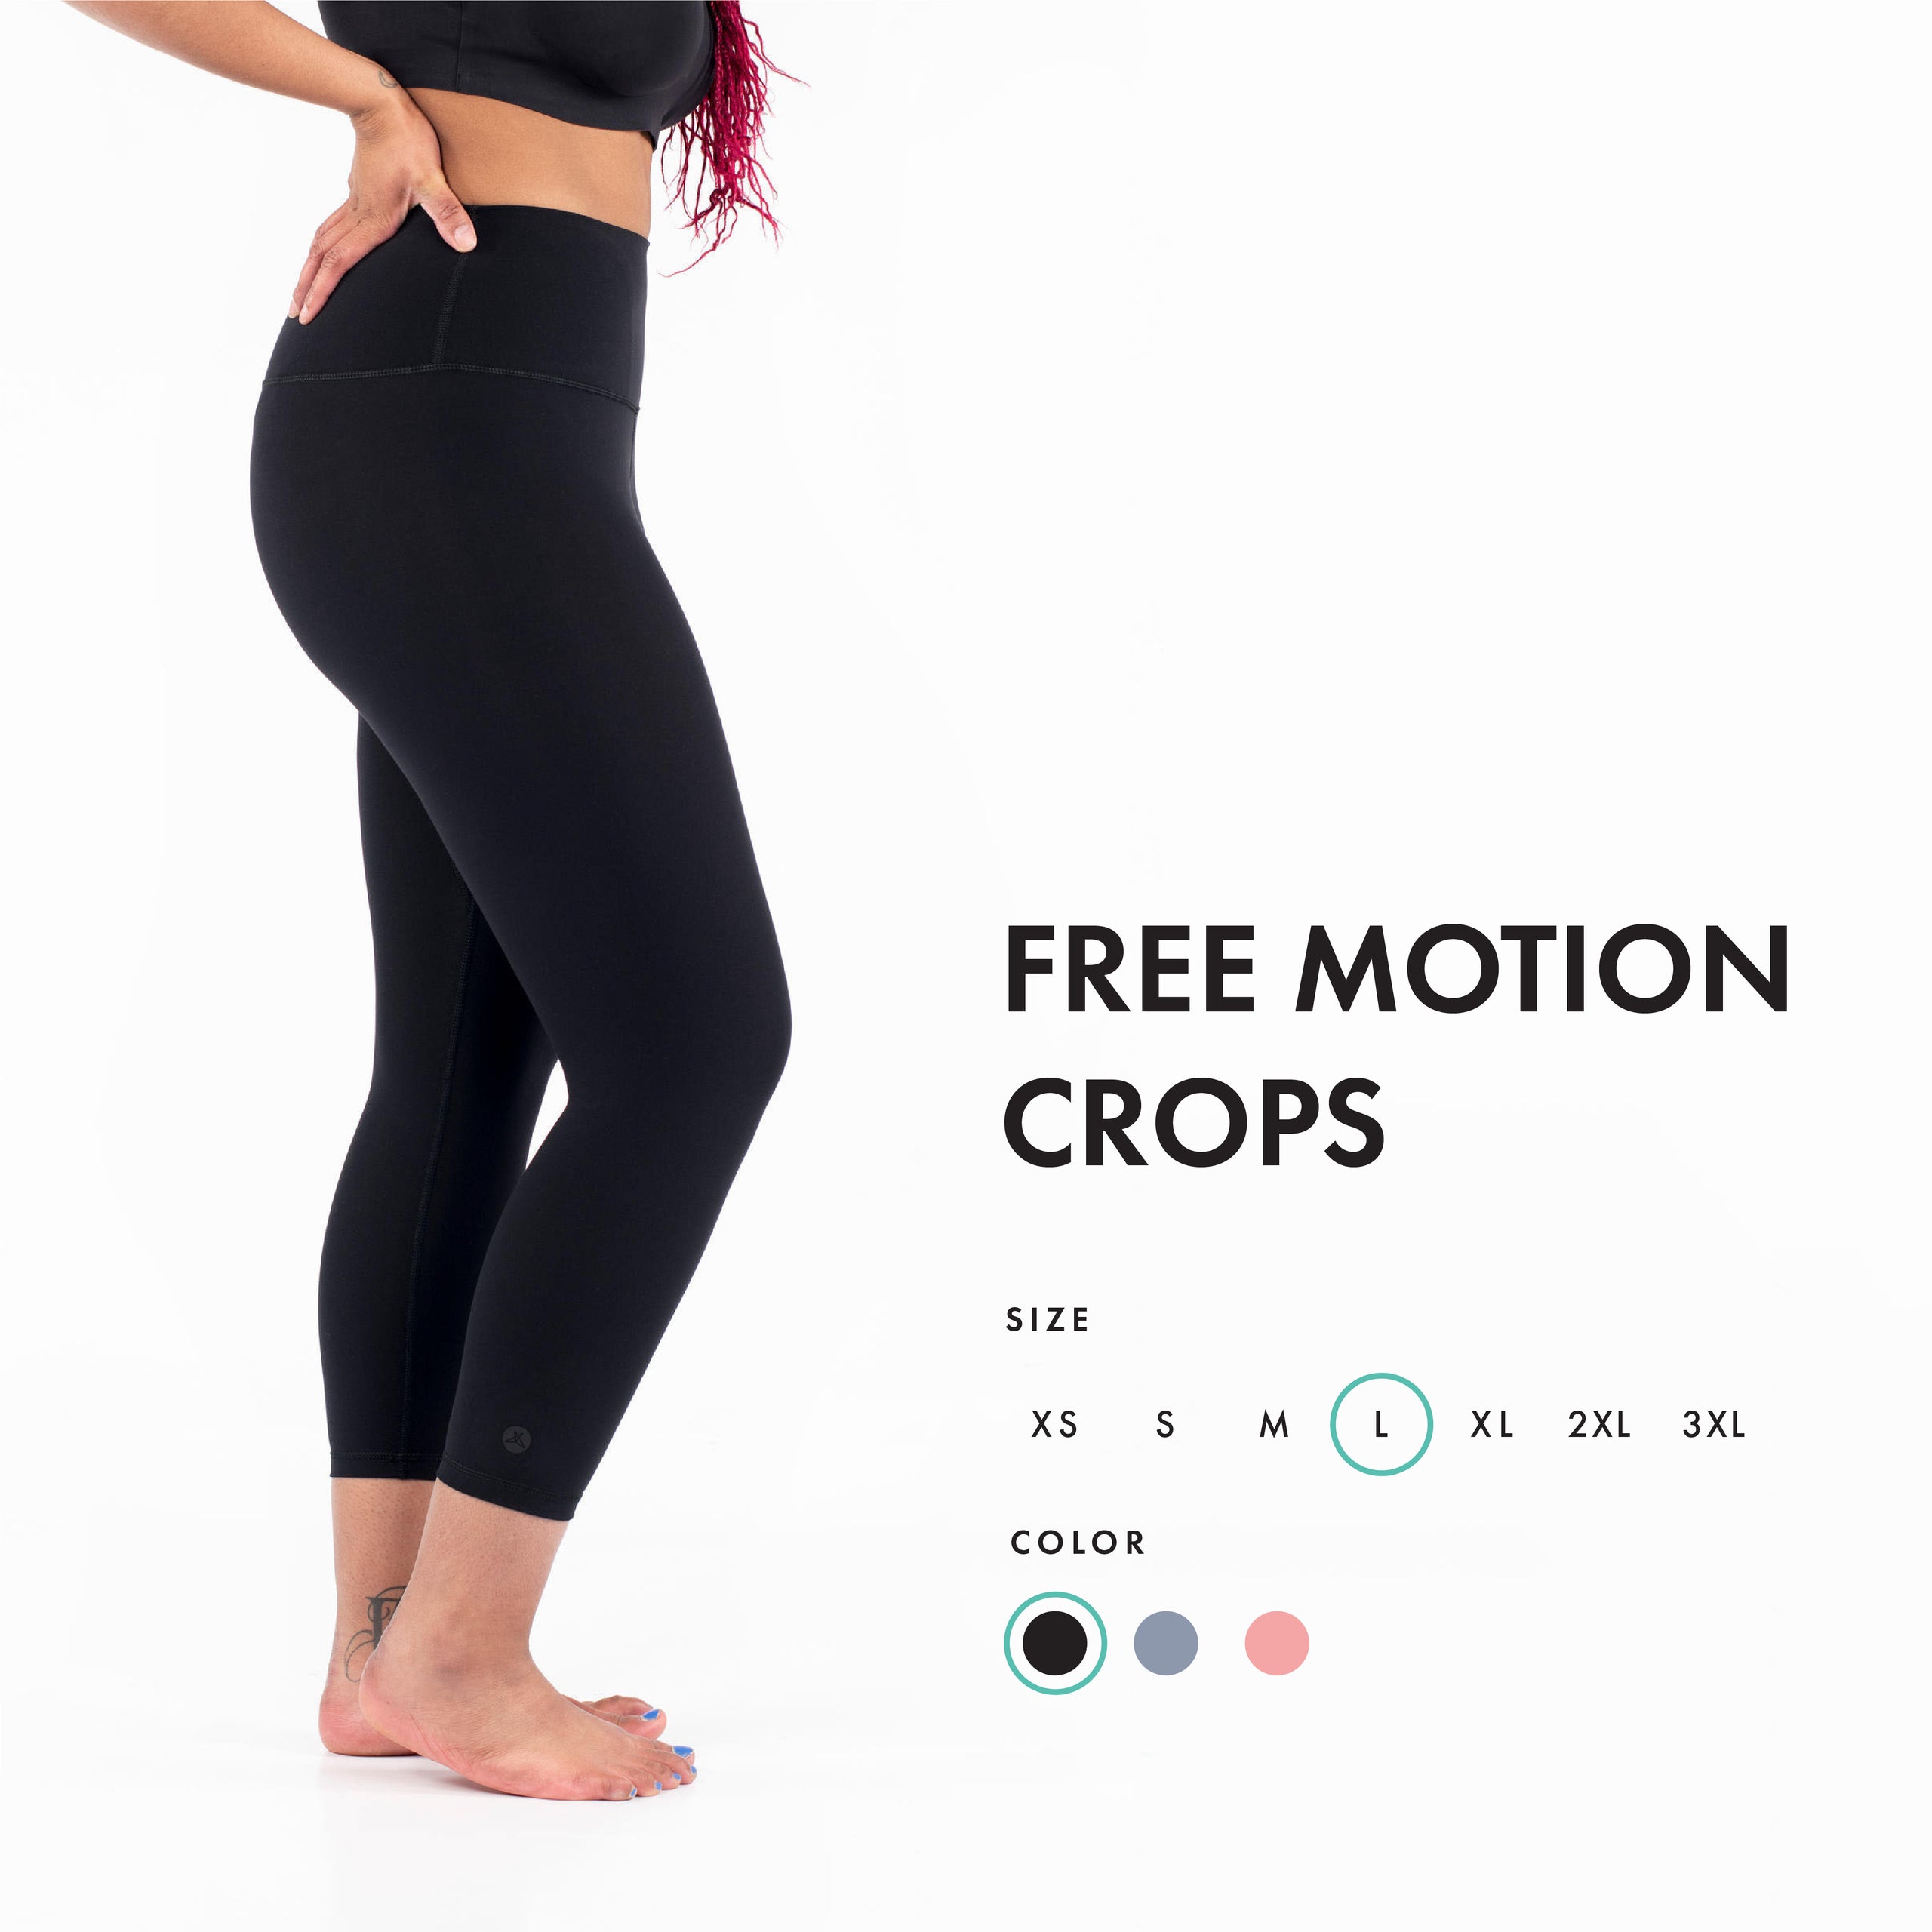 Free Motion Crops Mystic– SweetLegs